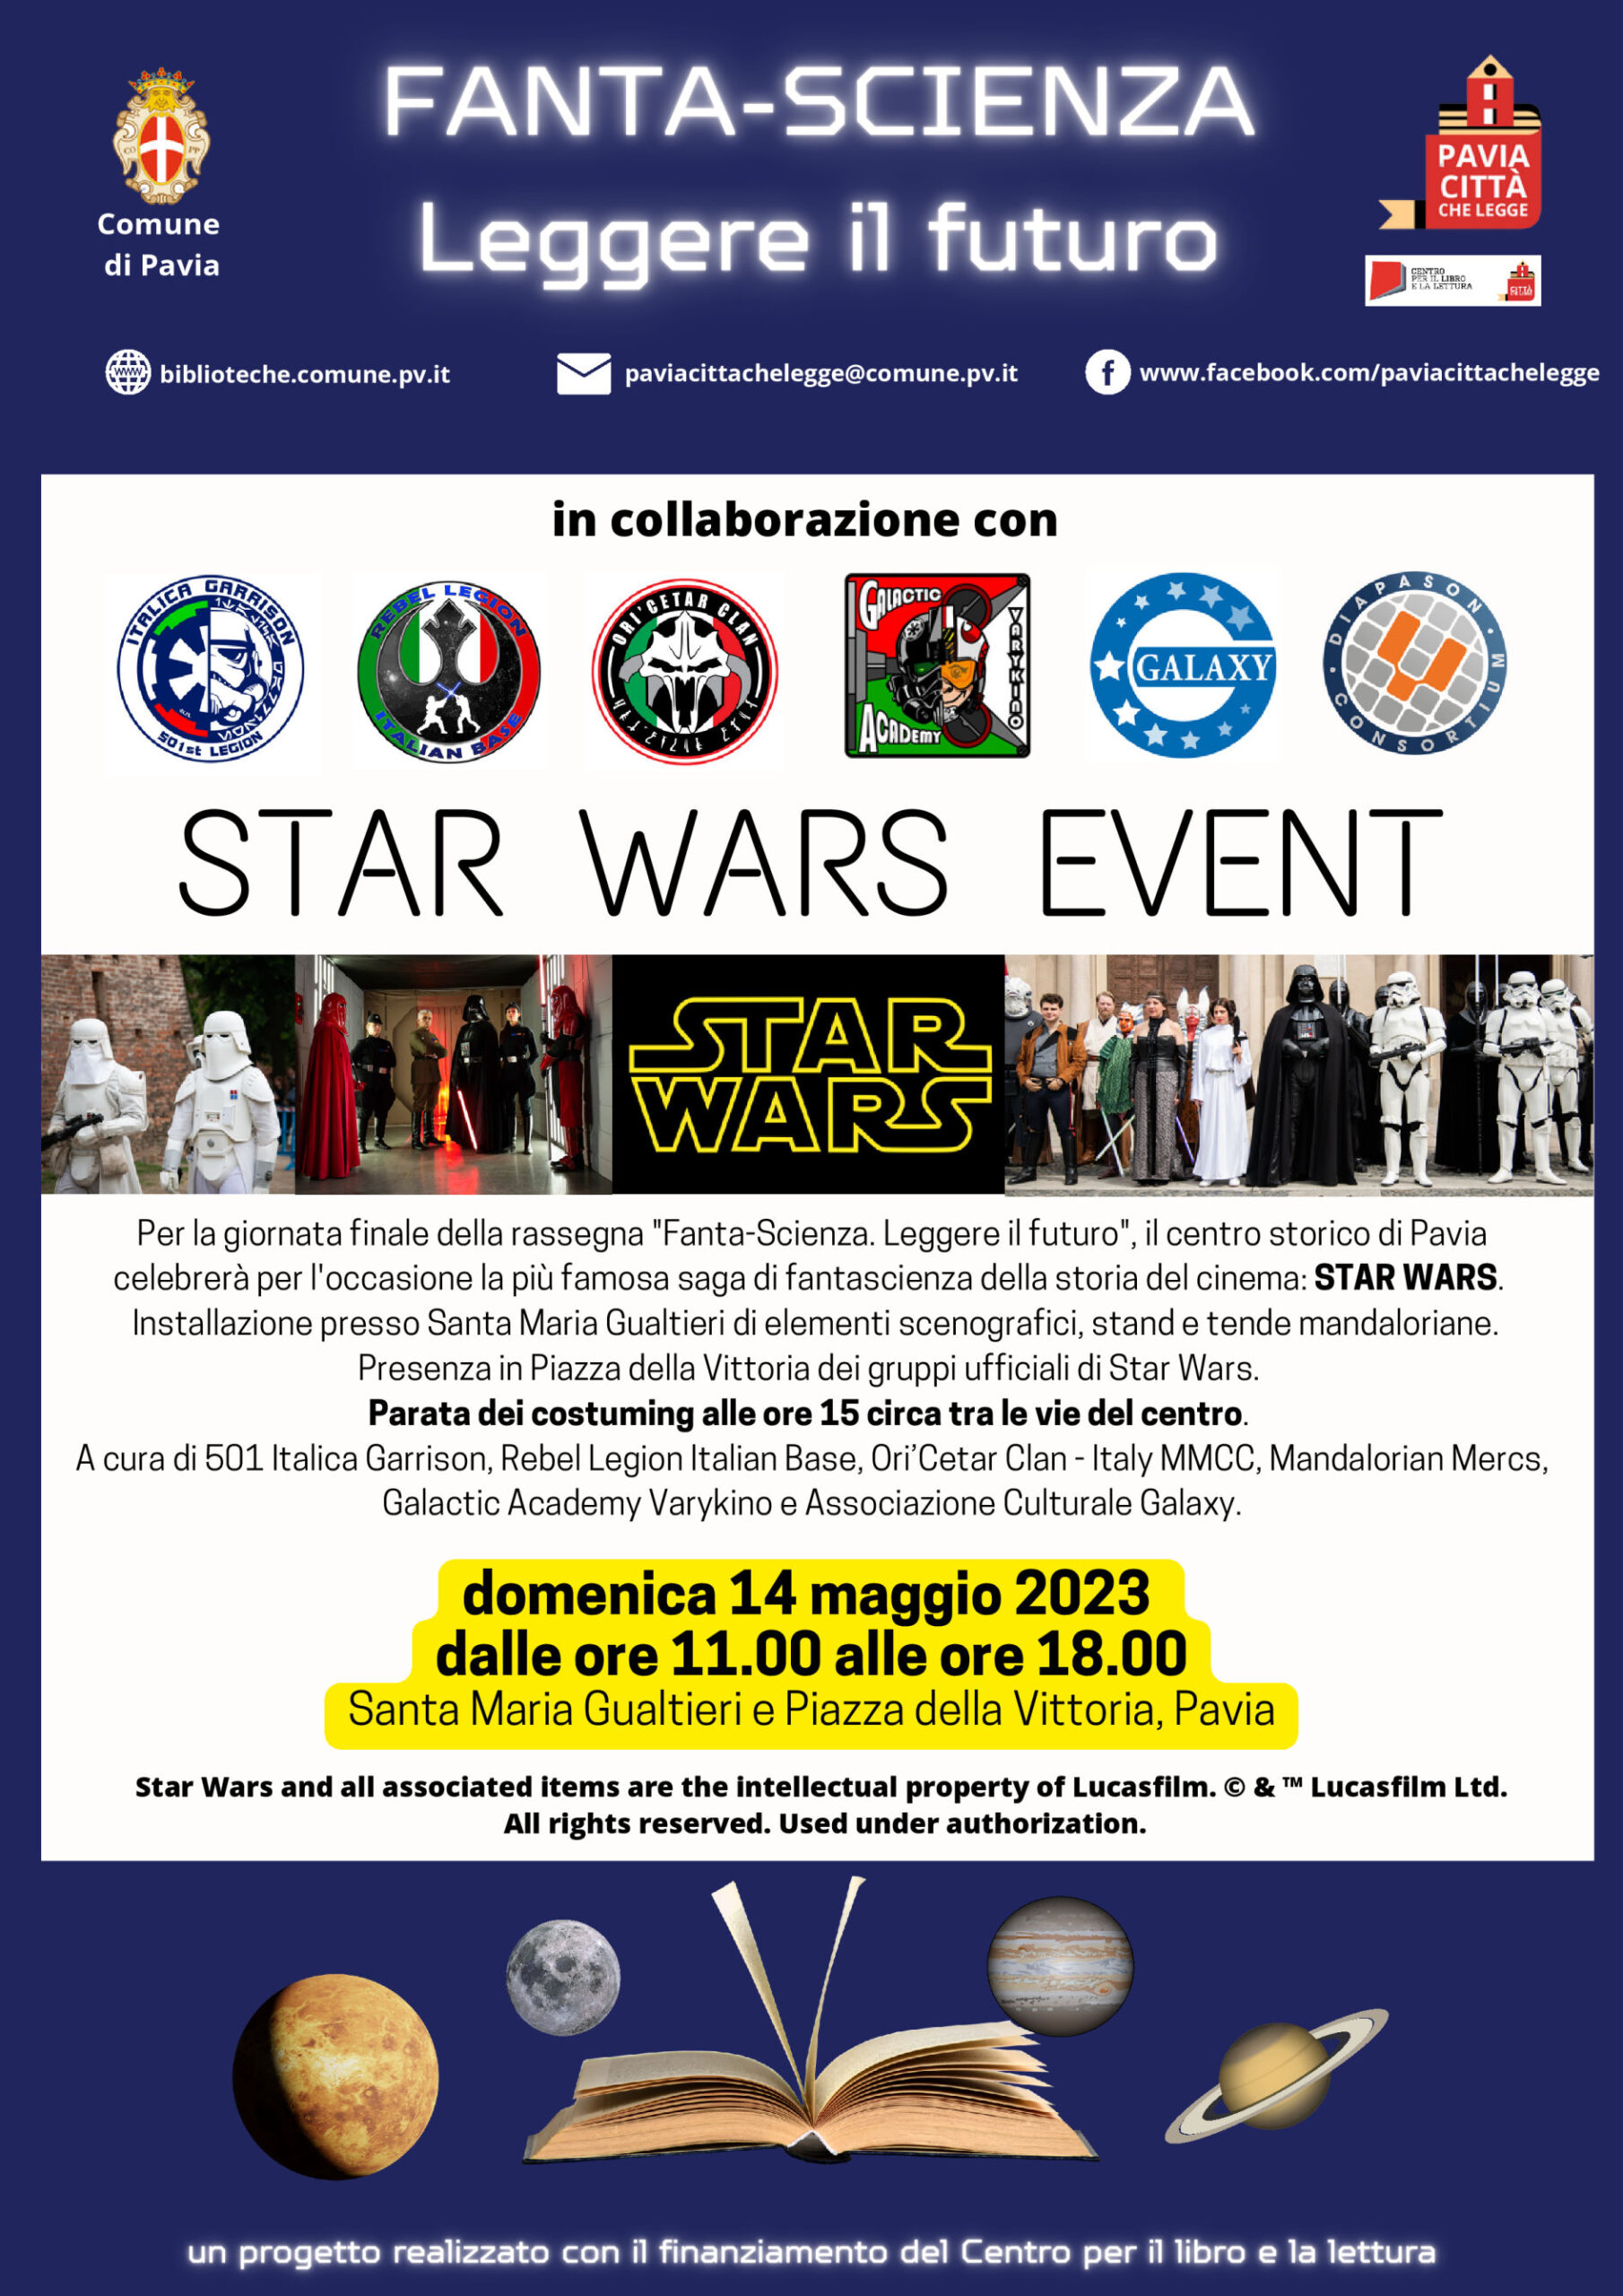 Fanta-Scienza. Leggere il futuro: lo Star Wars Event a Pavia